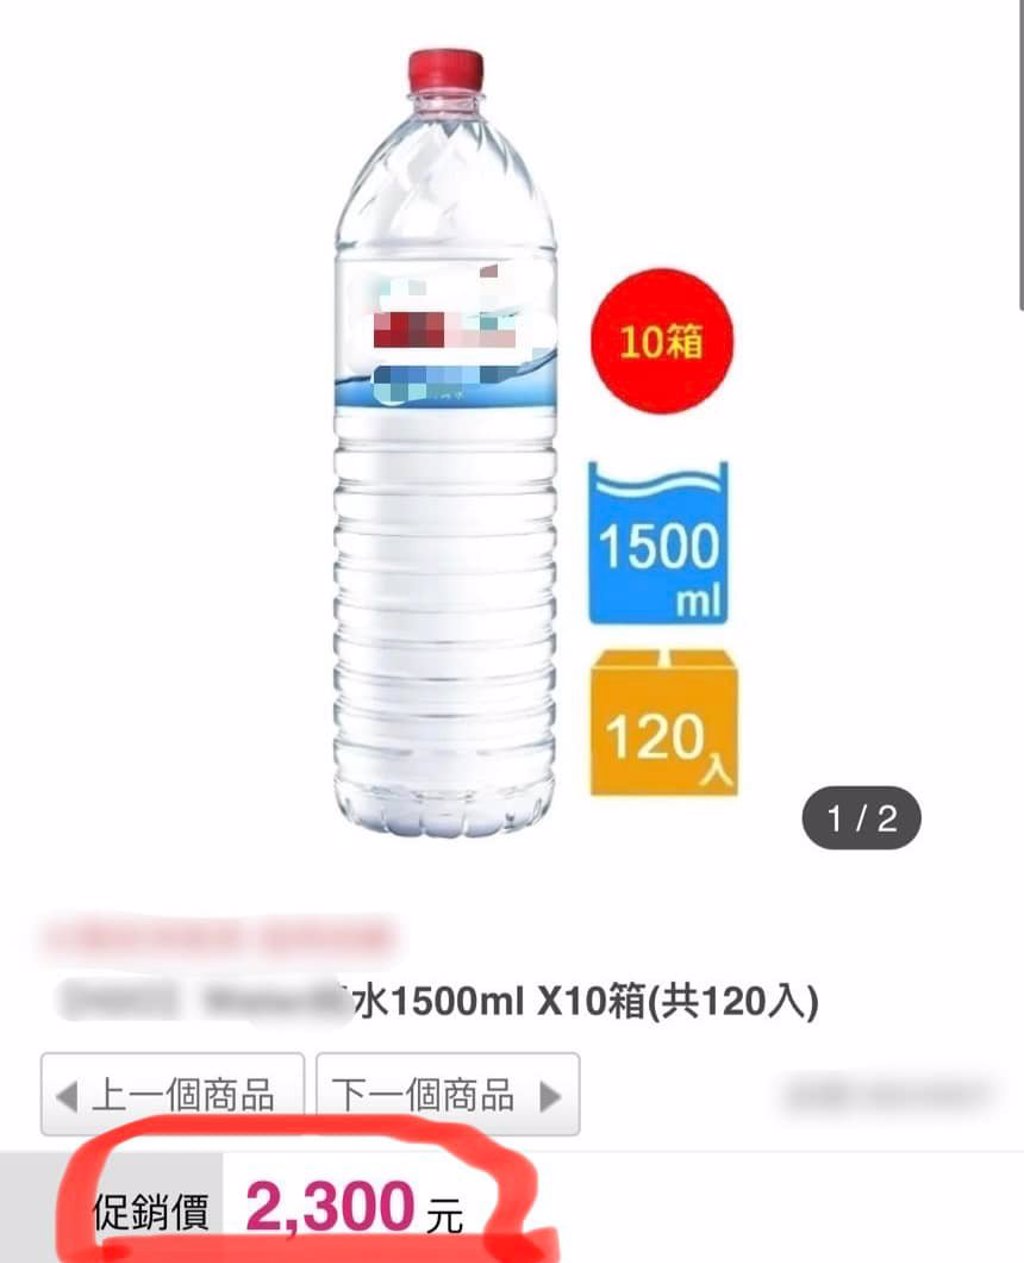 陳漢典助理會錯意，一次買了10箱1500ml的礦泉水。 (圖/翻自陳漢典臉書)
